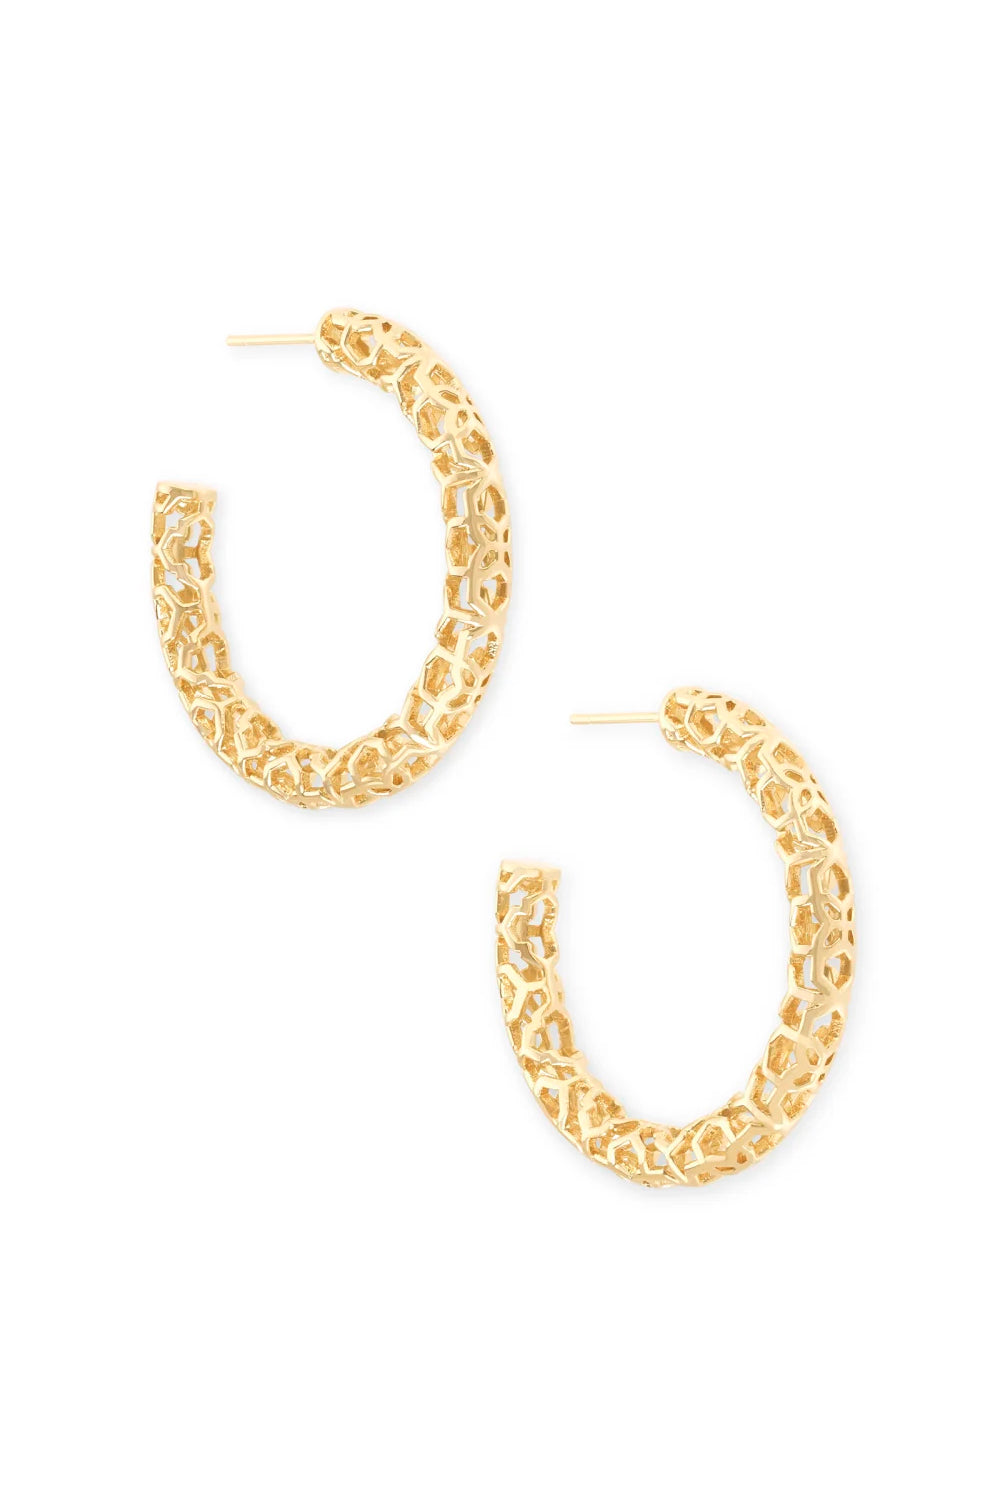 Kendra Scott: Maggie Small Hoop Earrings - Gold Filigree | Makk Fashions